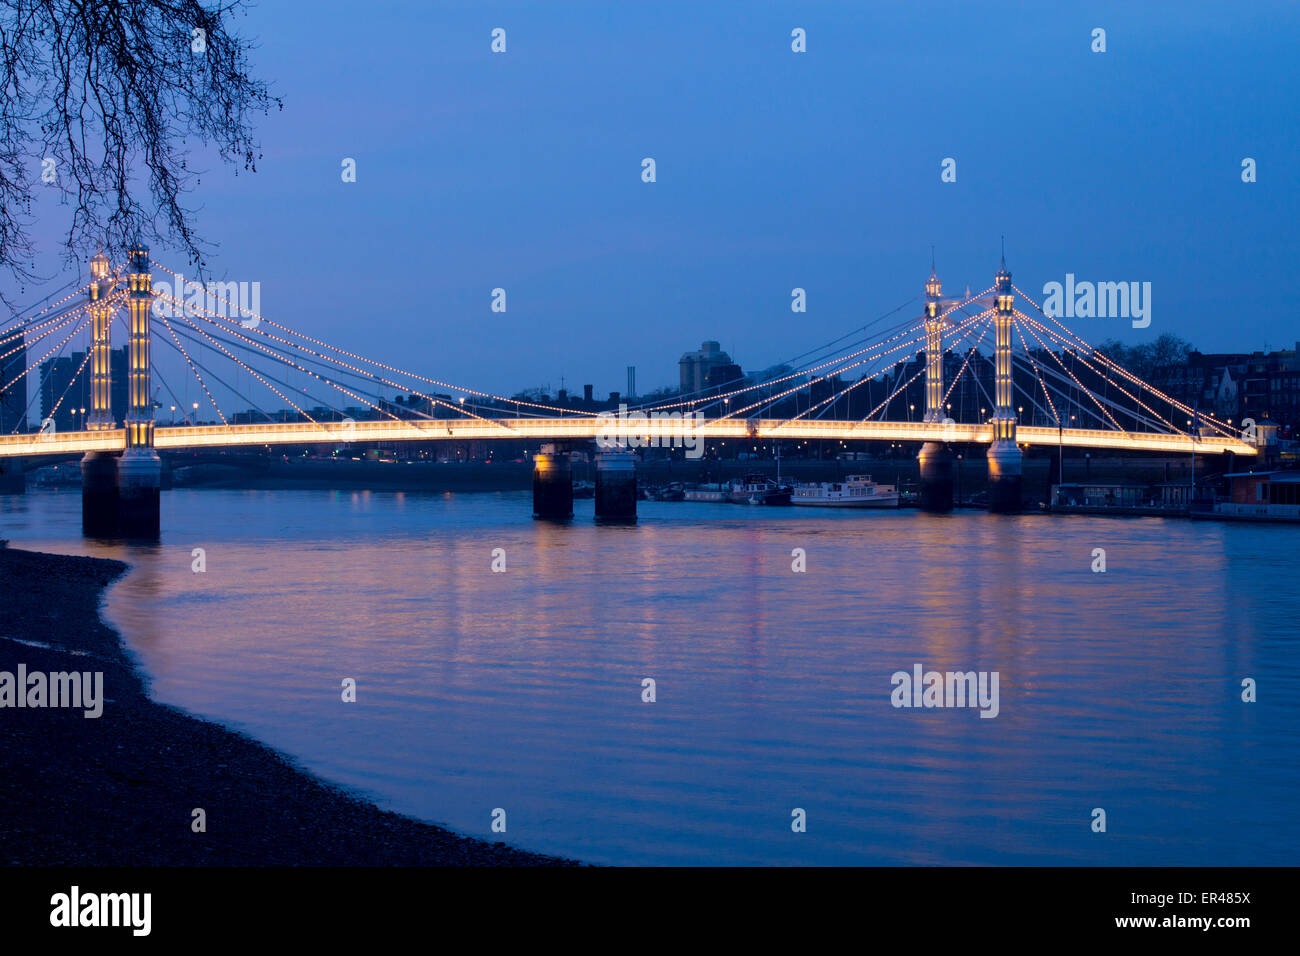 Albert Bridge au crépuscule, tombée de la nuit coucher de soleil allumé Tamise Chelsea London England UK Banque D'Images